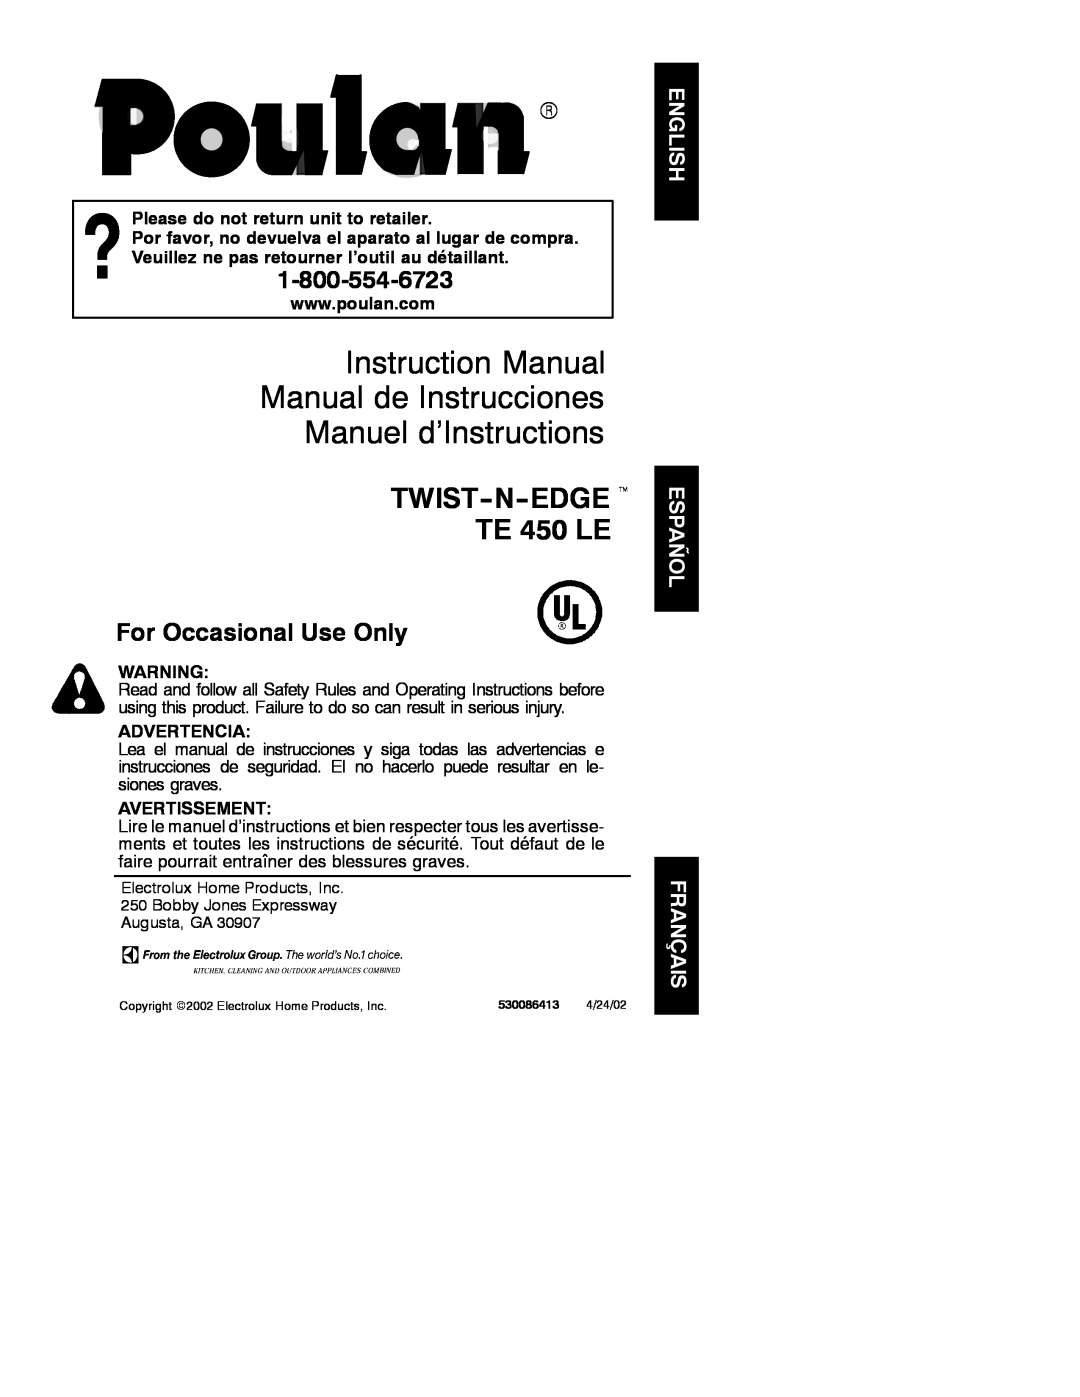 Poulan 530086413 instruction manual Instruction Manual Manual de Instrucciones Manuel d’Instructions, Advertencia 